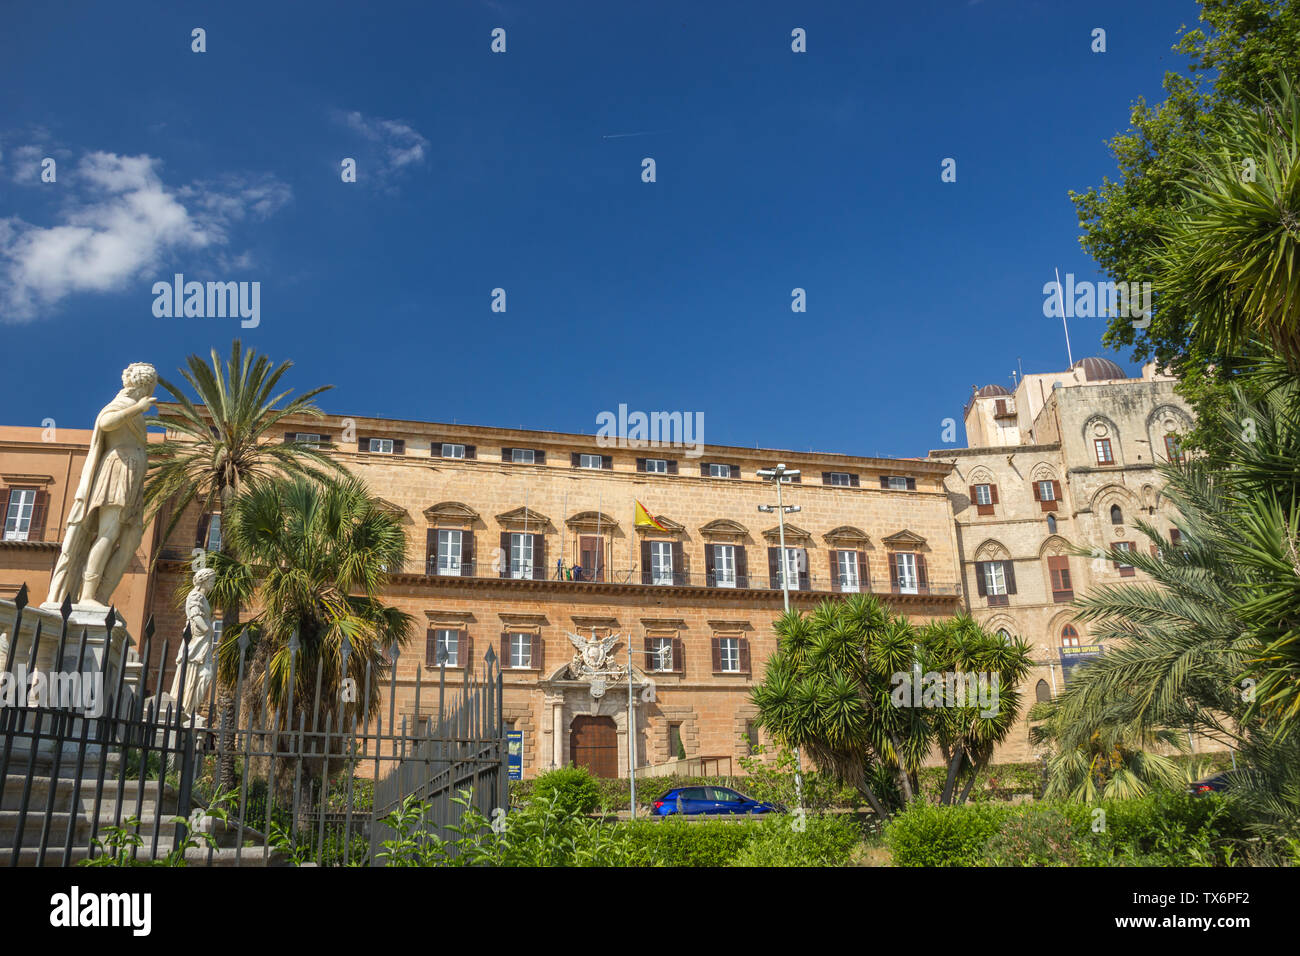 Palermo Sicilia, facciata del patrimonio storico del Palazzo dei Normanni e il suo giardino, palazzo reale con la statua e le palme Foto Stock